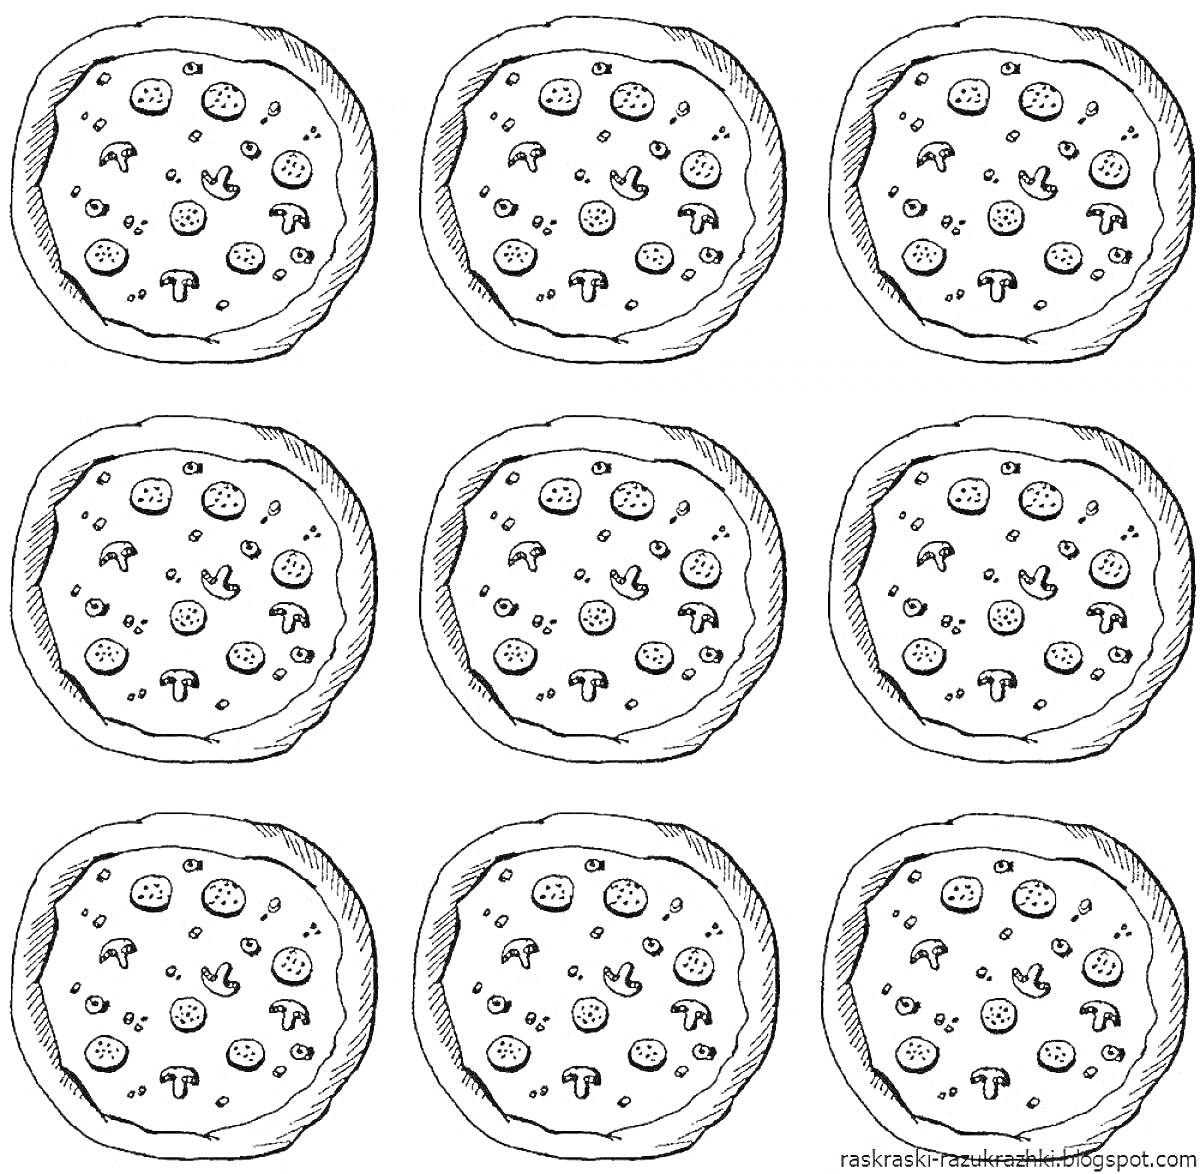 Раскраска с девятью пиццами, содержащими кусочки колбасы, ломтики грибов, кусочки оливок и кусочки перца